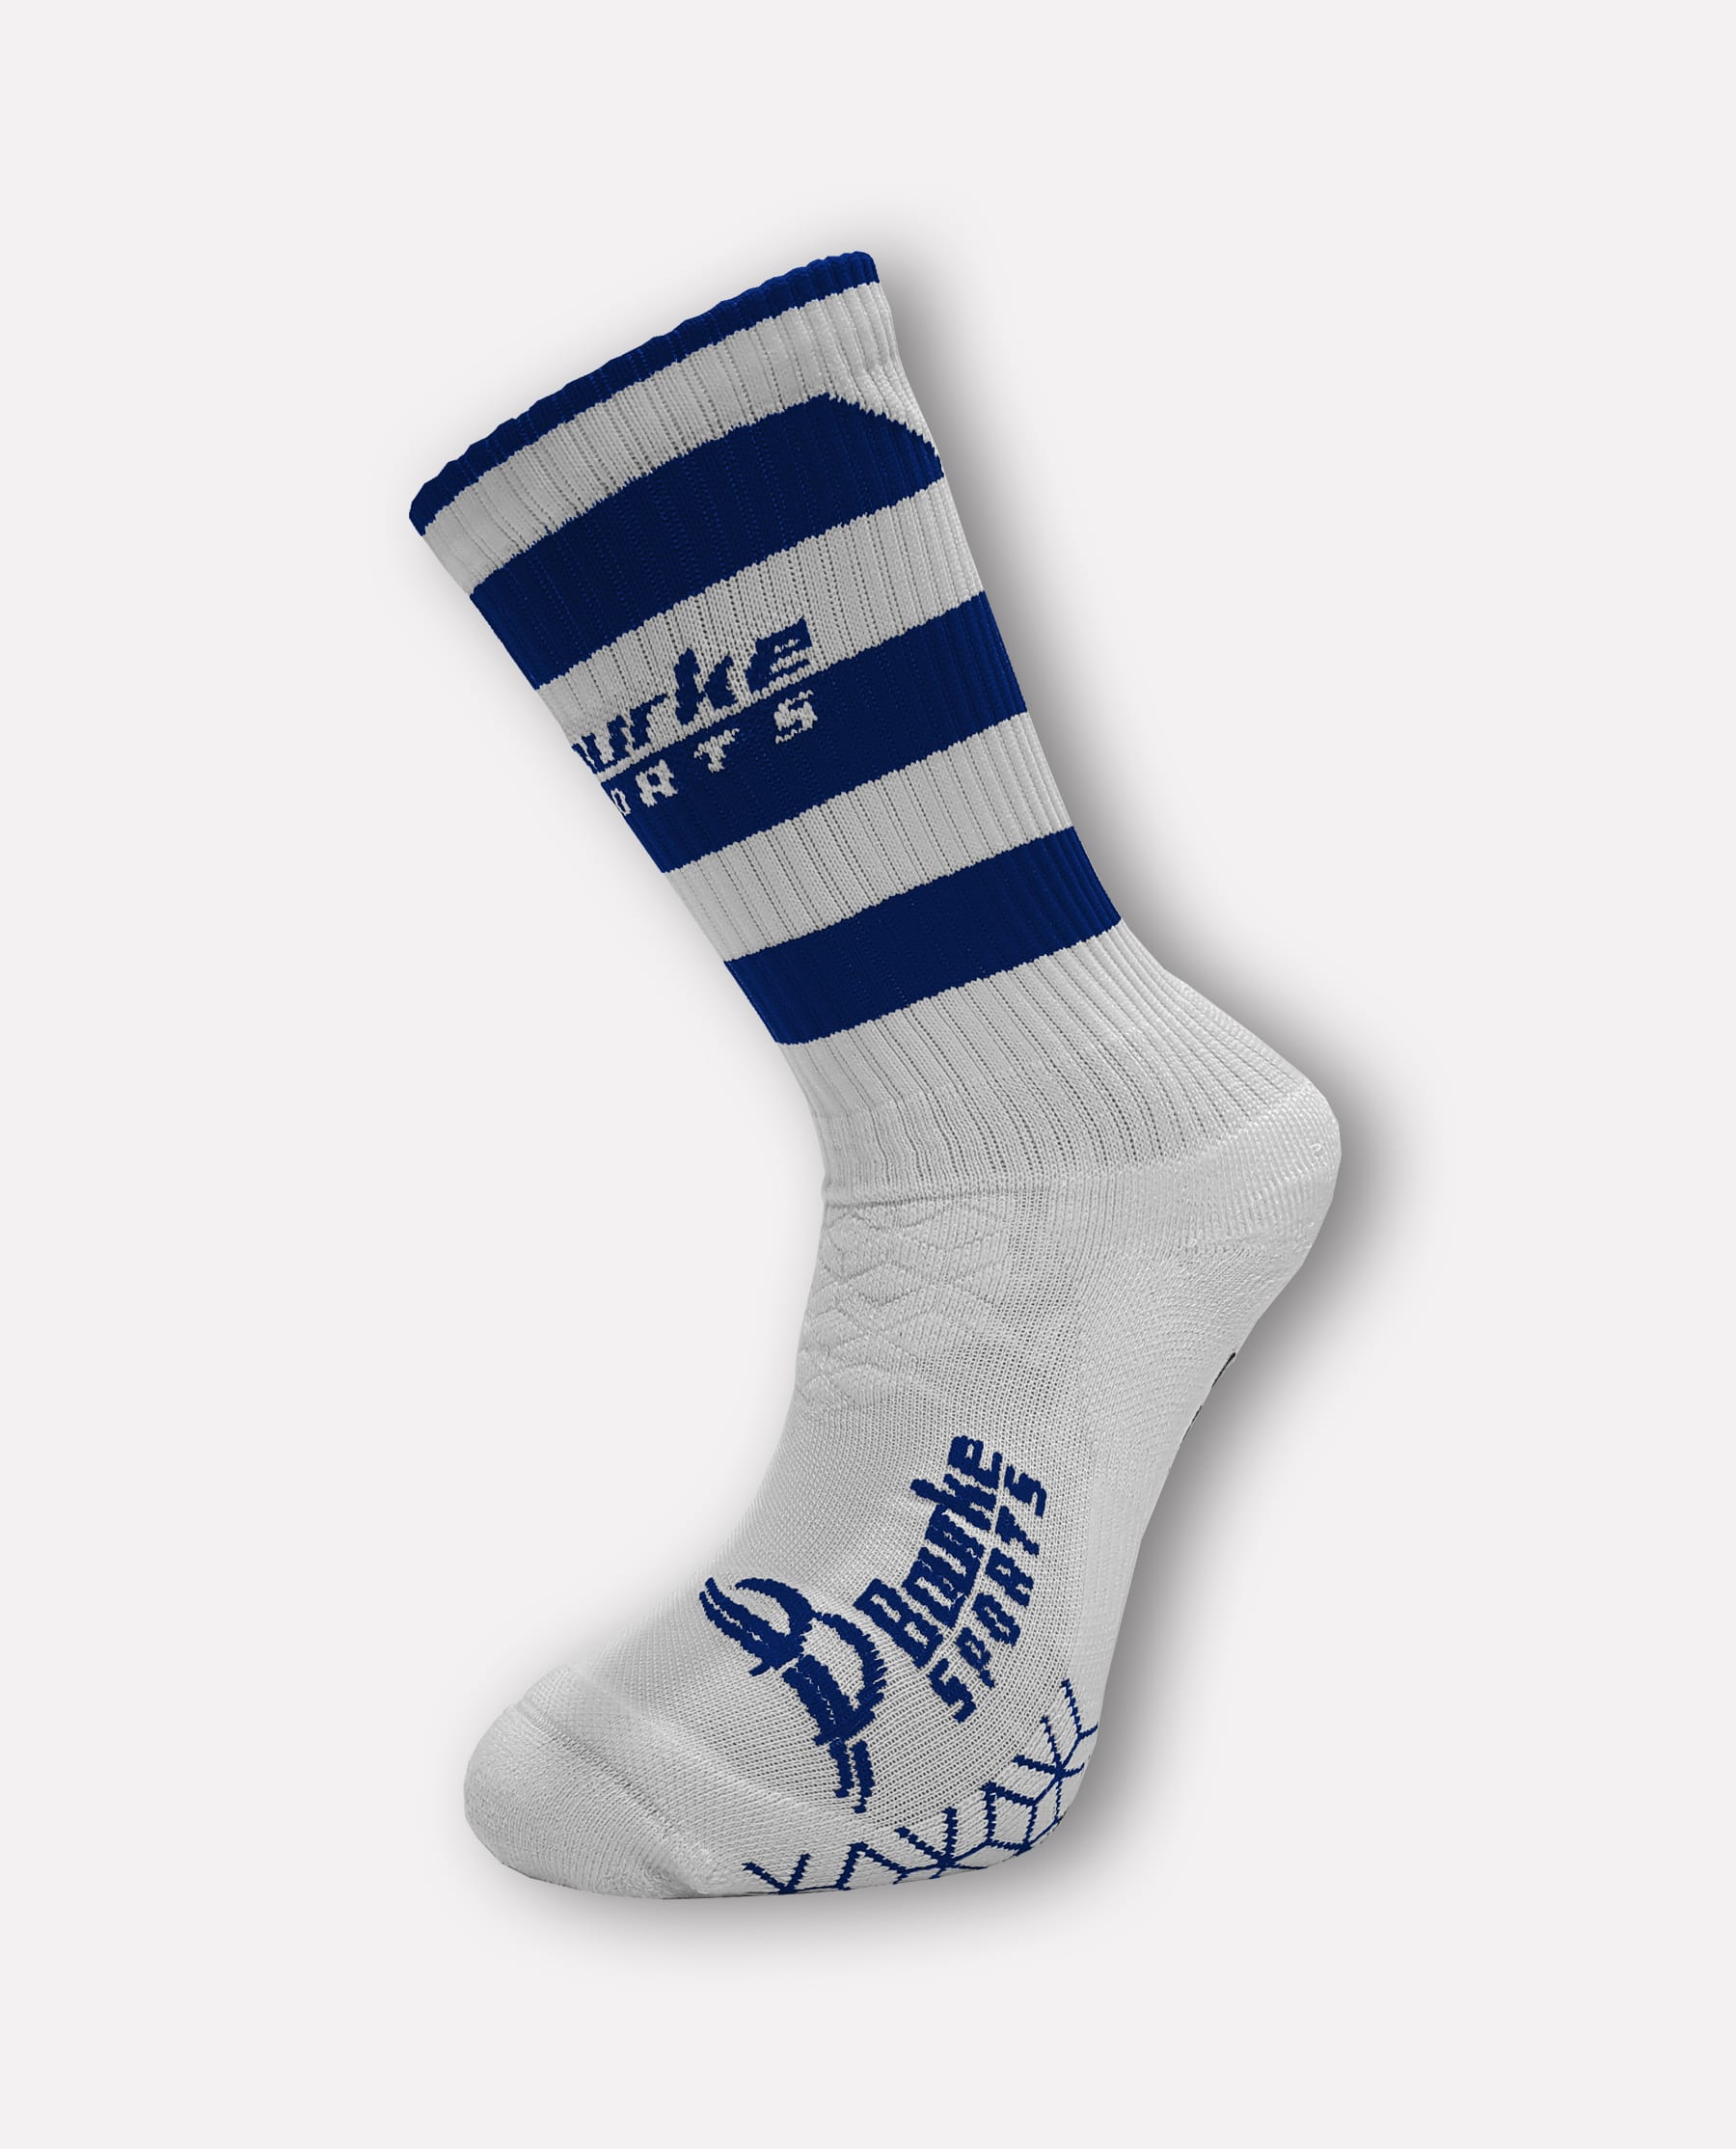 Lisdowney Miniz Hooped Socks (Blue/White)